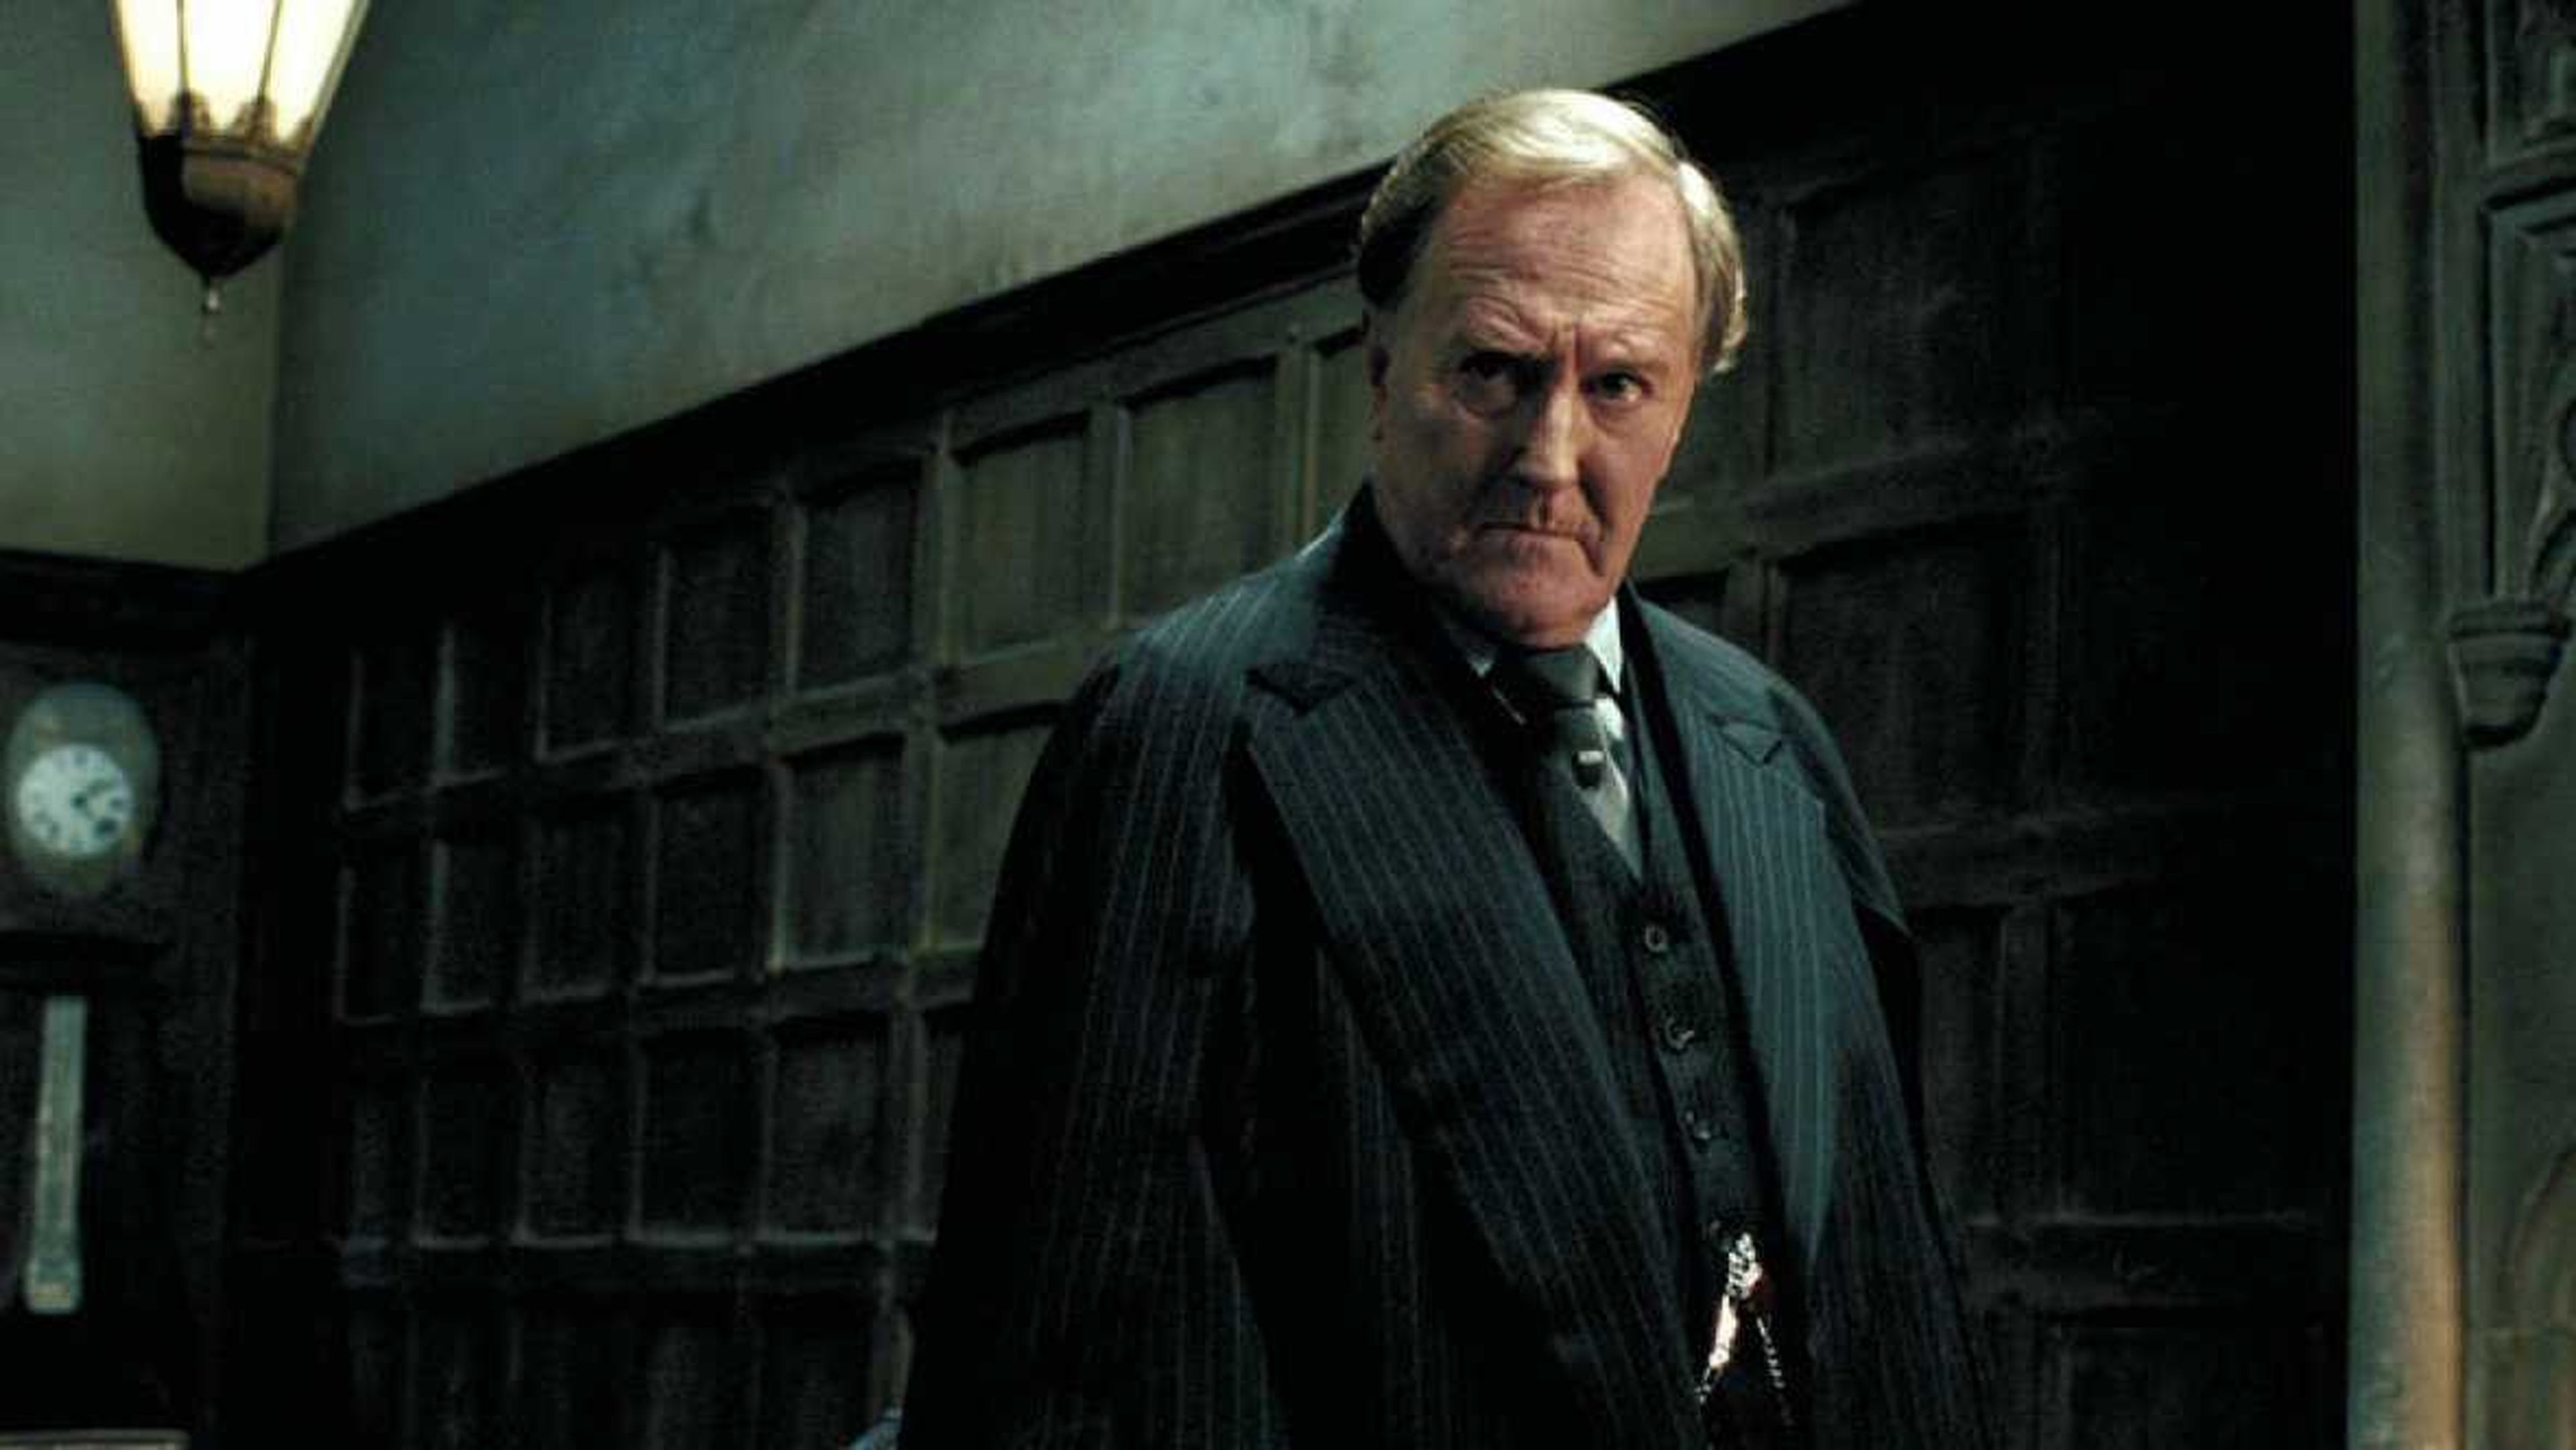 El actor Robert Hardy, quien dio vida al Ministro de Magia Cornelius Fudge en la saga cinematográfica de Harry Potter, ha muerto a los 91 años de edad.